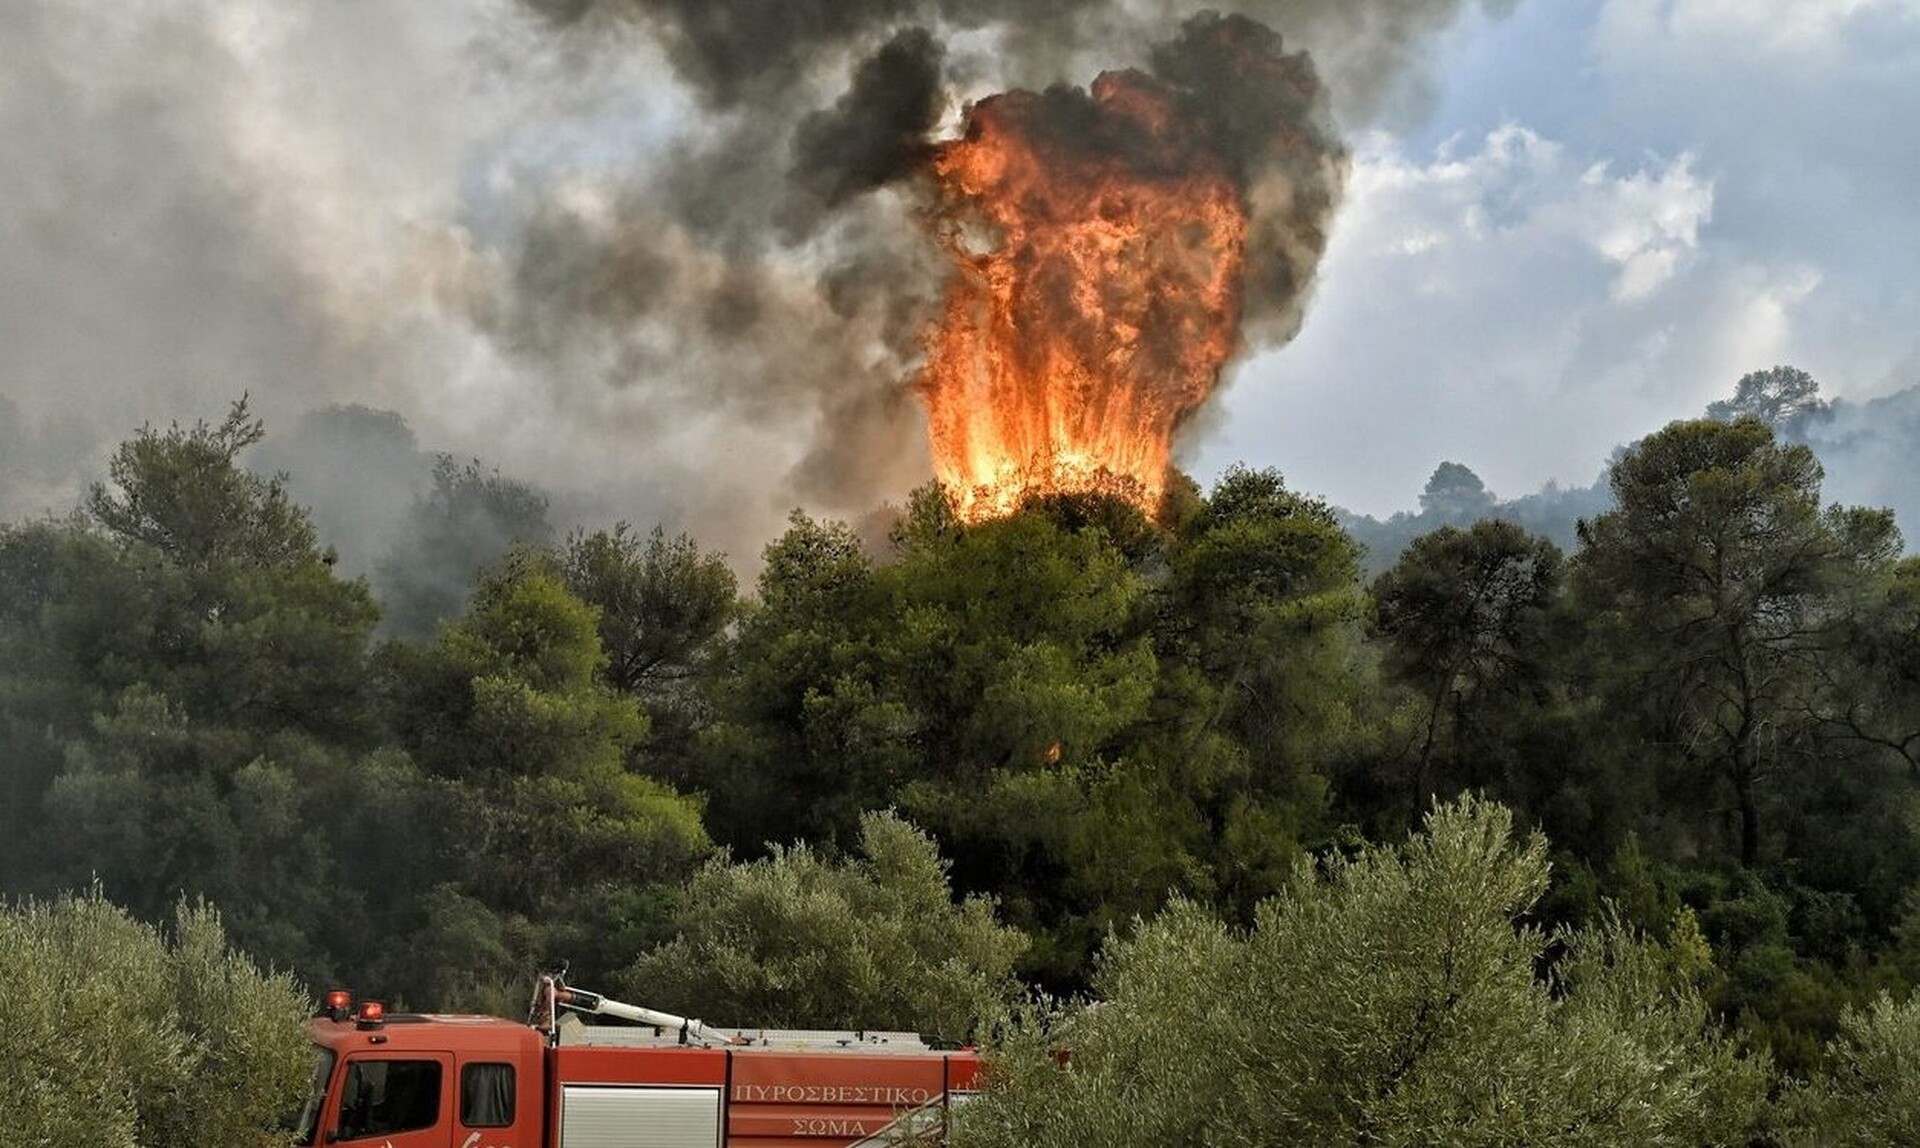 Σε εξέλιξη η φωτιά στη Λακωνία - Ενισχύονται οι πυροσβεστικές δυνάμεις